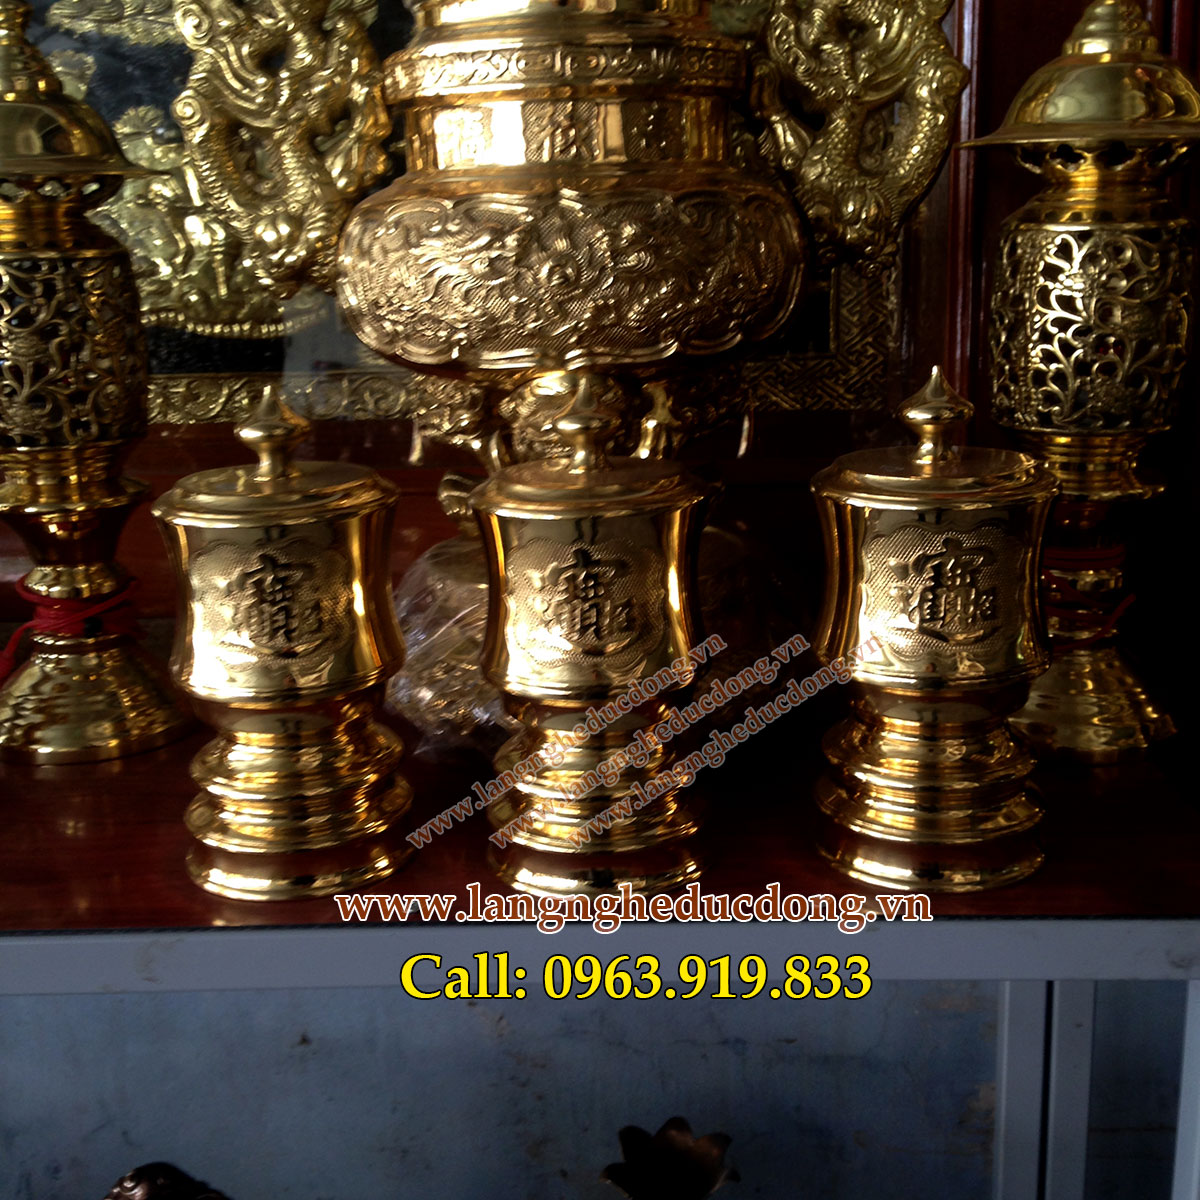 langngheducdong.vn - Đài thờ, bộ đài DK 10cm bằng đồng, đồ thờ cúng đồng